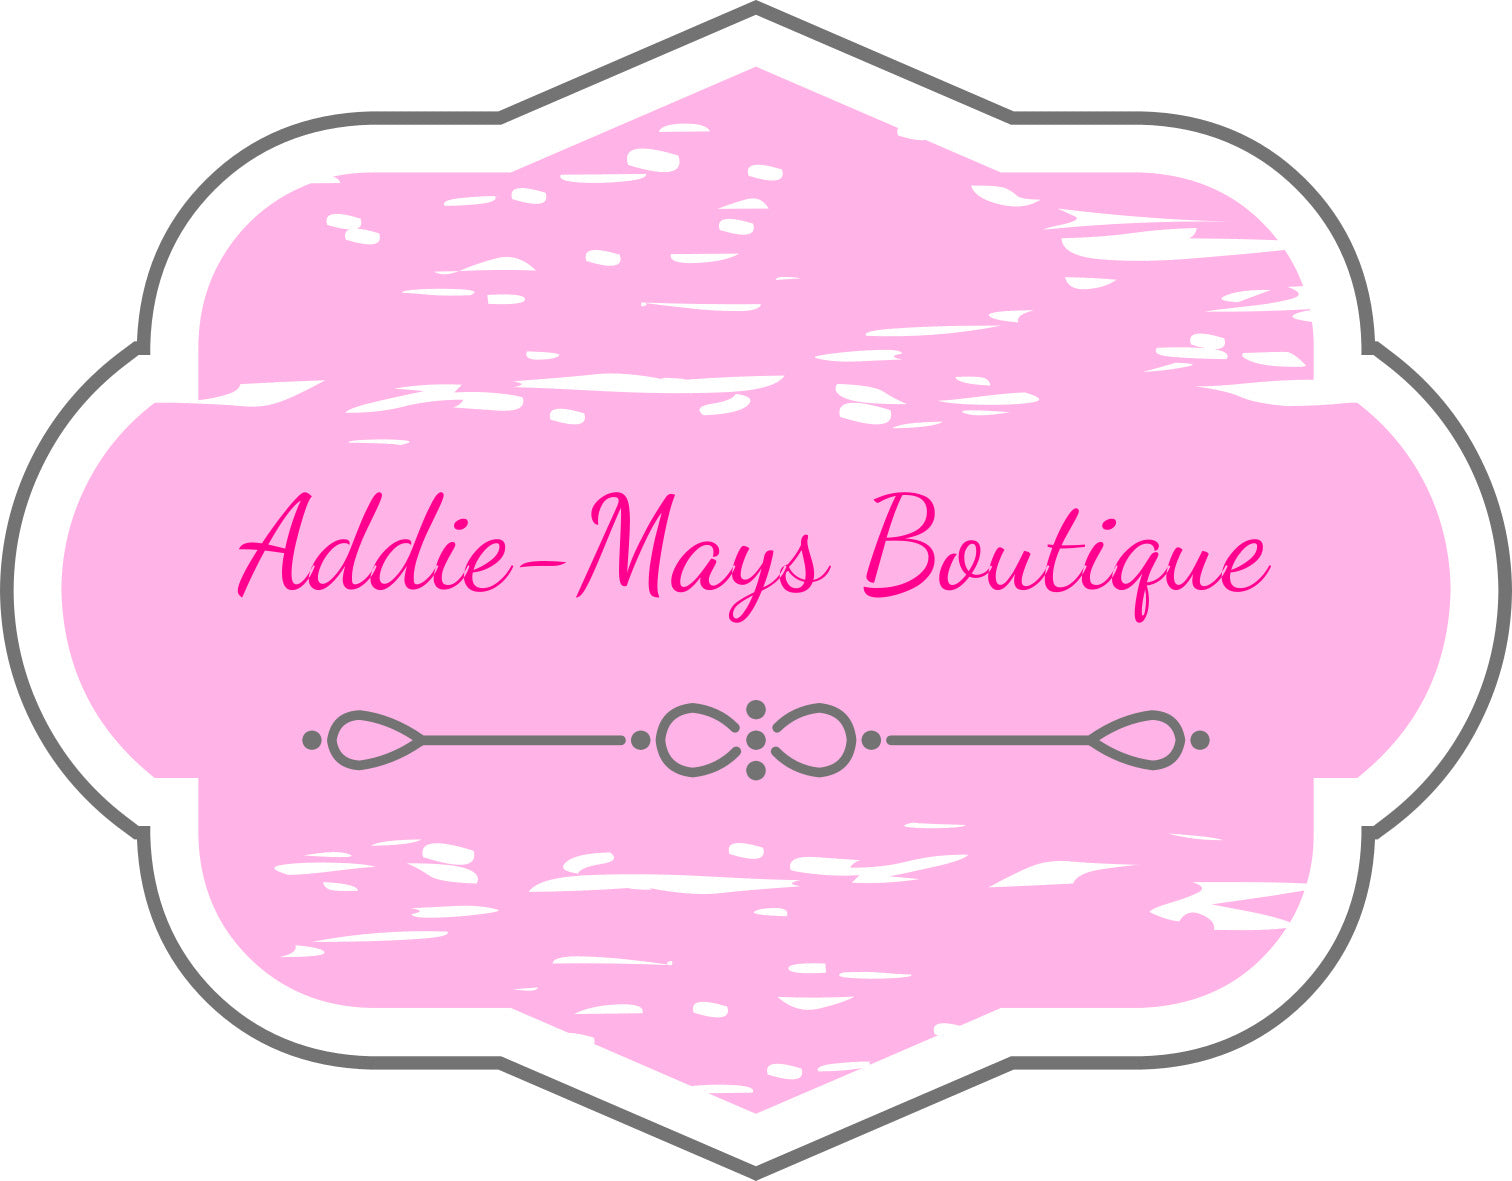 Addie-Mays Boutique 